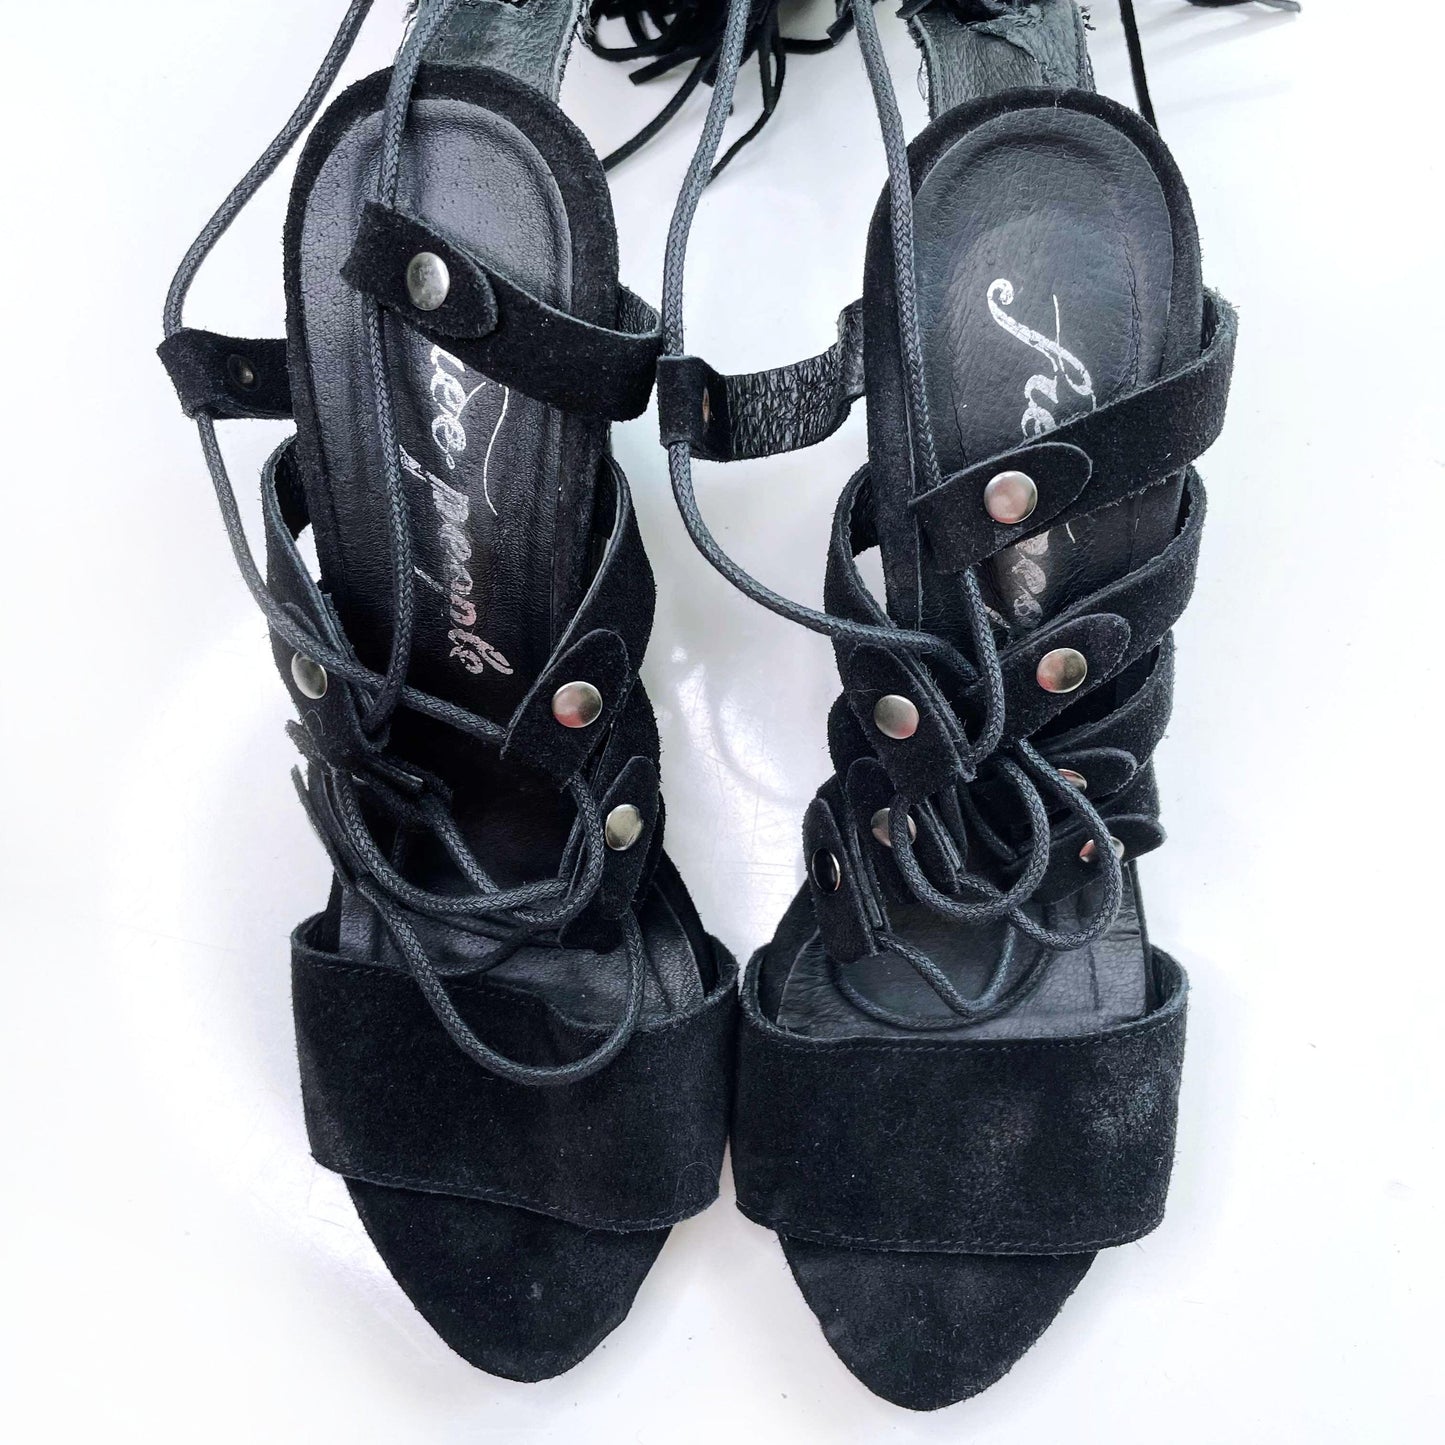 free people solstice black suede gladiator fringe sandals - size 38